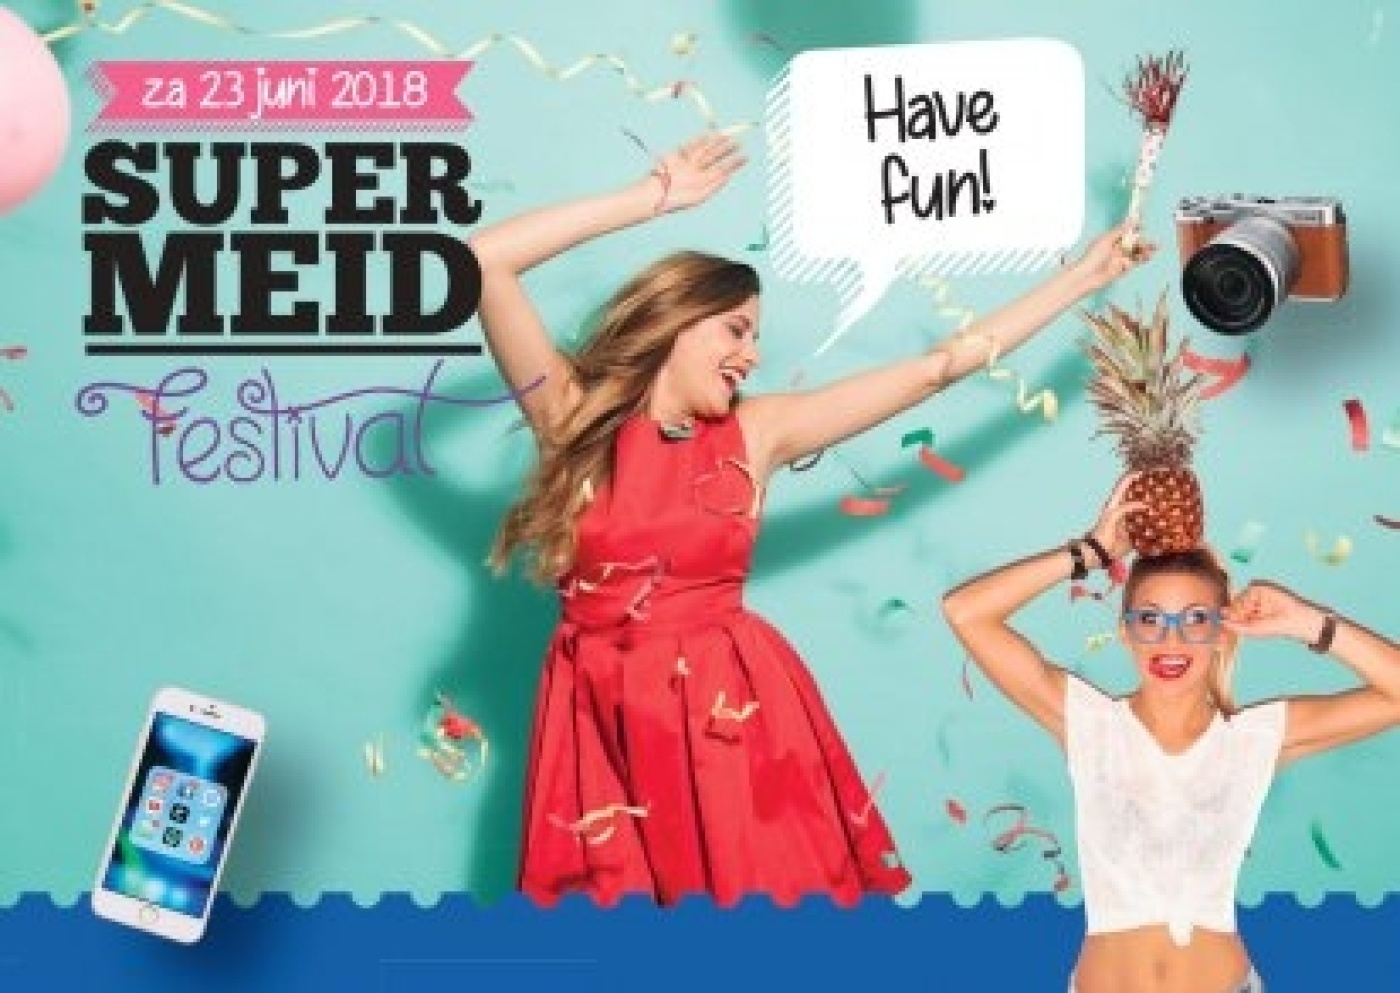 supermeid-festival-flyer-voorkant-2018-1_413x0.jpg